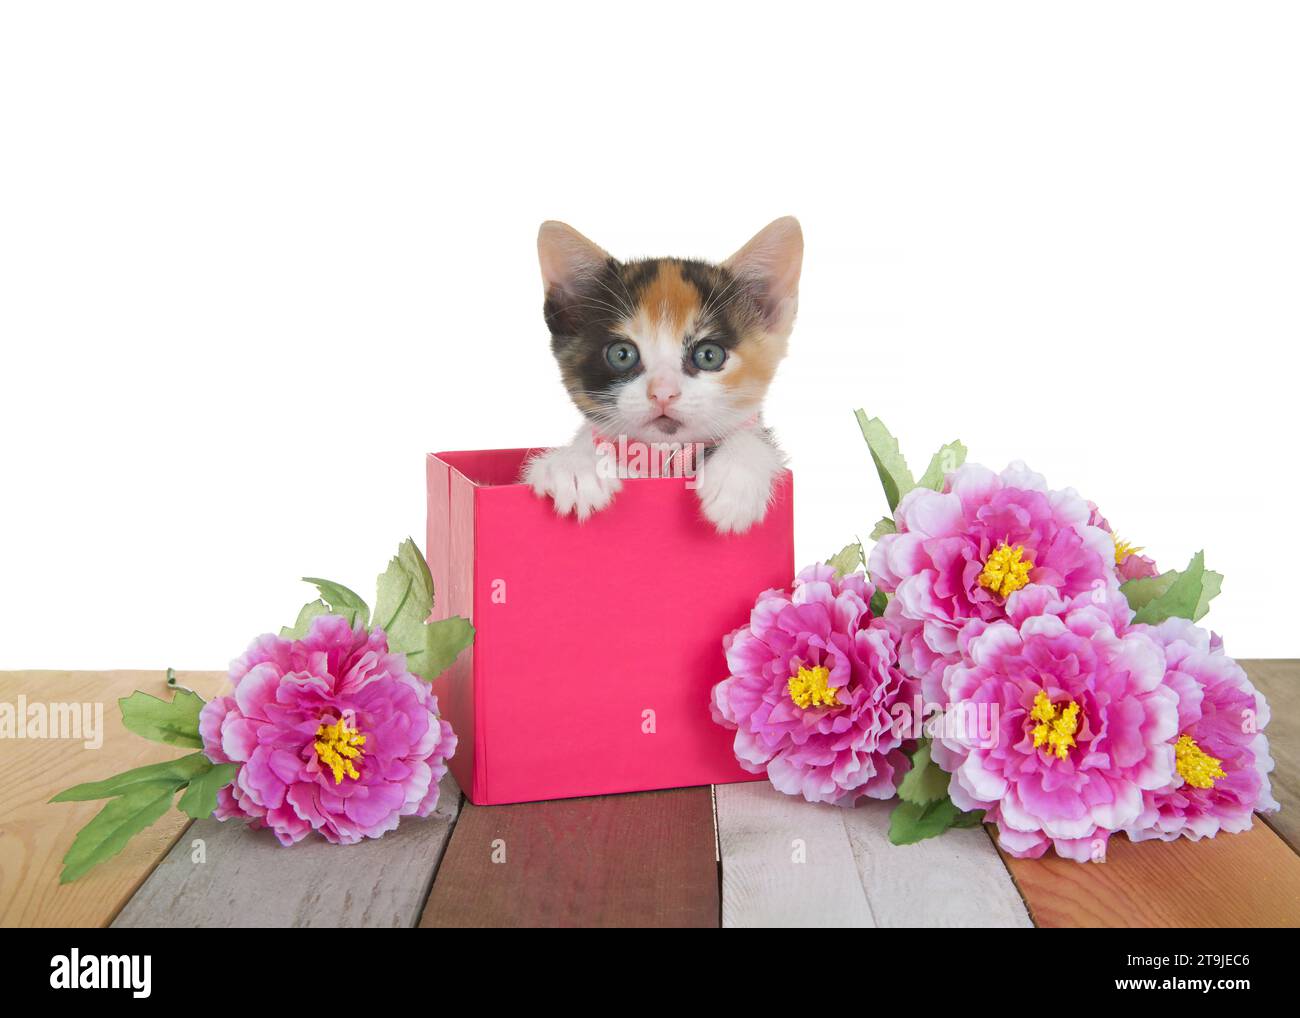 Nahaufnahme eines entzückenden dreifarbigen Kaliko-Kätzchens mit rosa Kragen und Glocke, das in einer rosa Box auf mehrfarbigem Holzboden neben rosa Karnatio sitzt Stockfoto